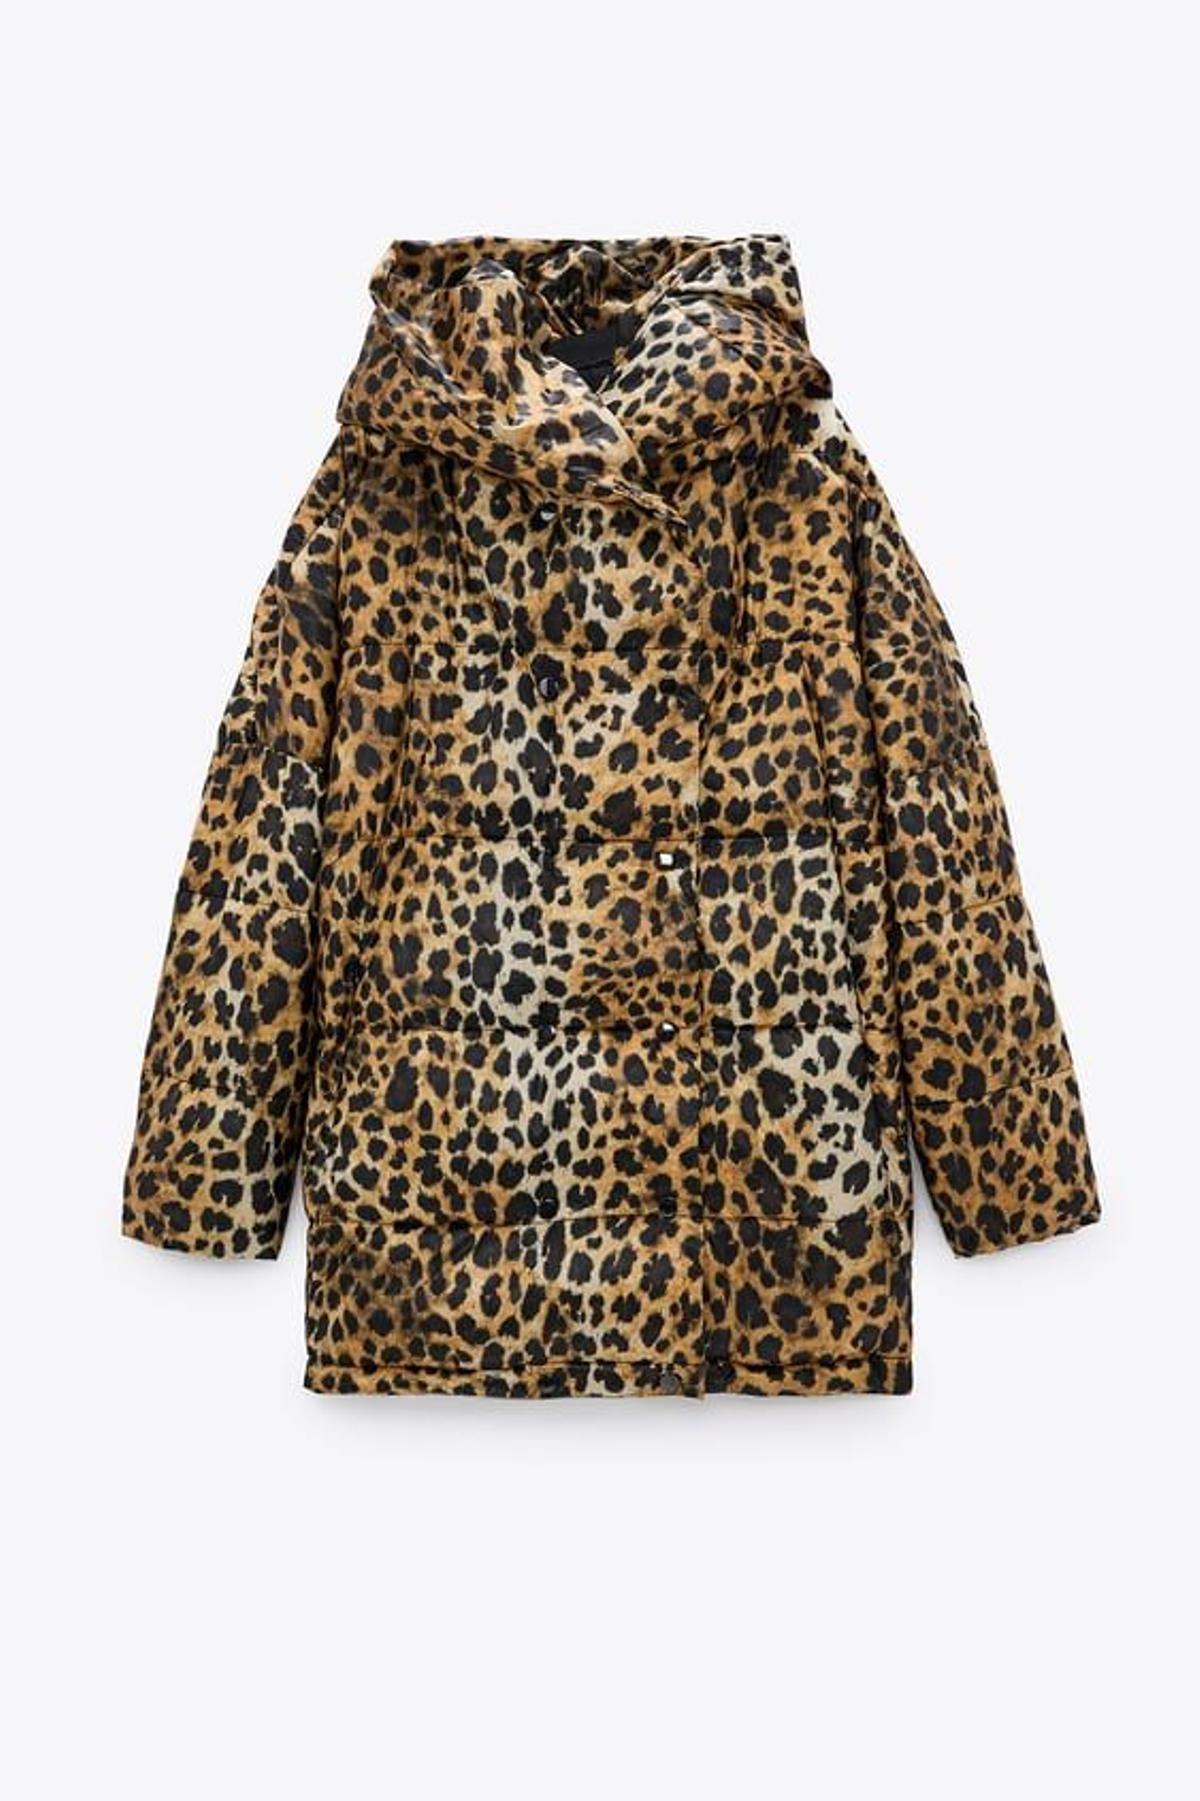 Abrigo acolchado de cuello subido con capucha y manga larga, de Zara (49,99 euros)